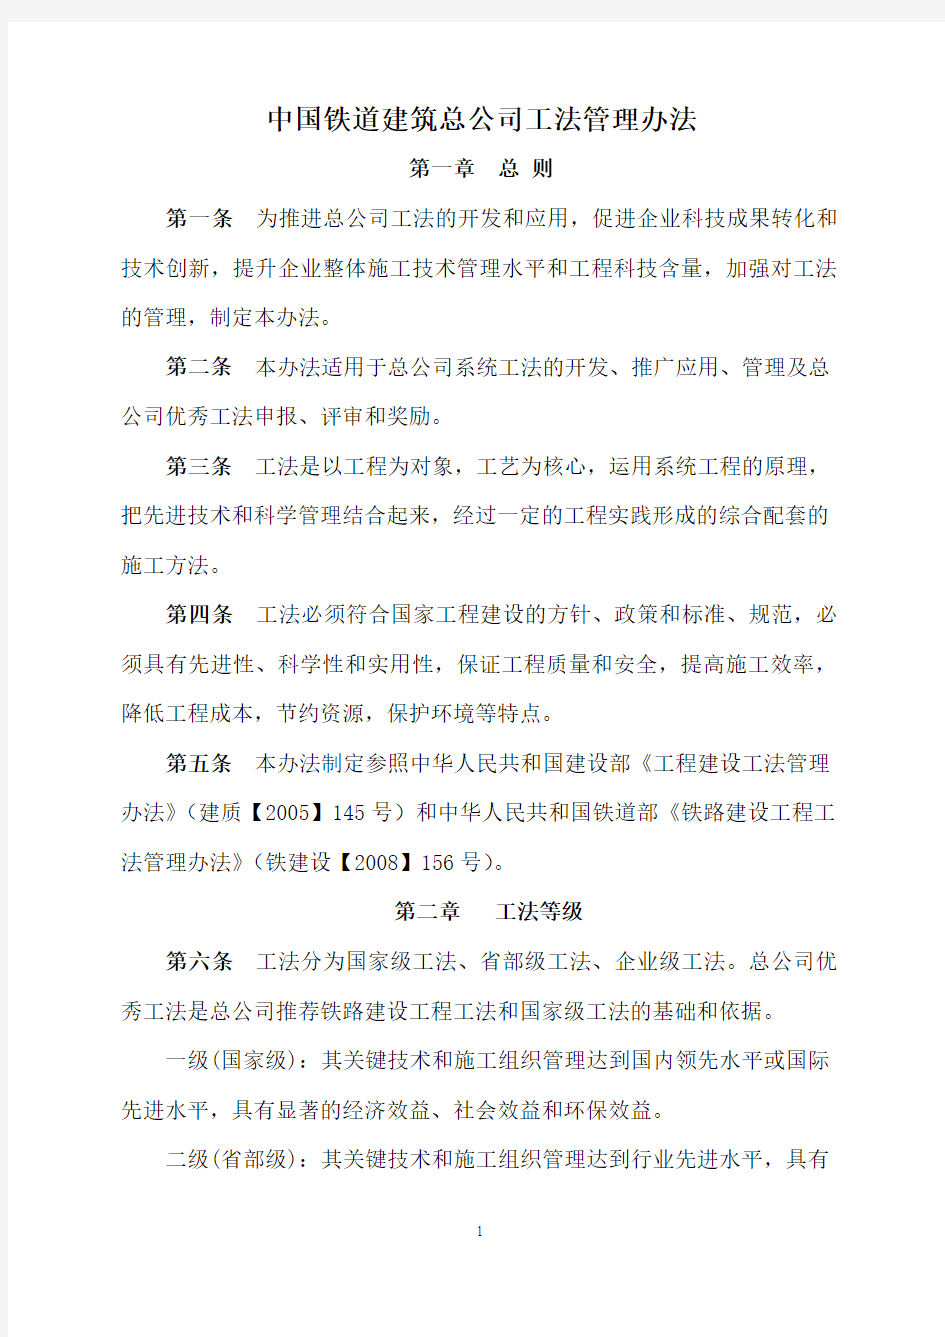 中国铁道建筑总公司工法管理办法201190号文